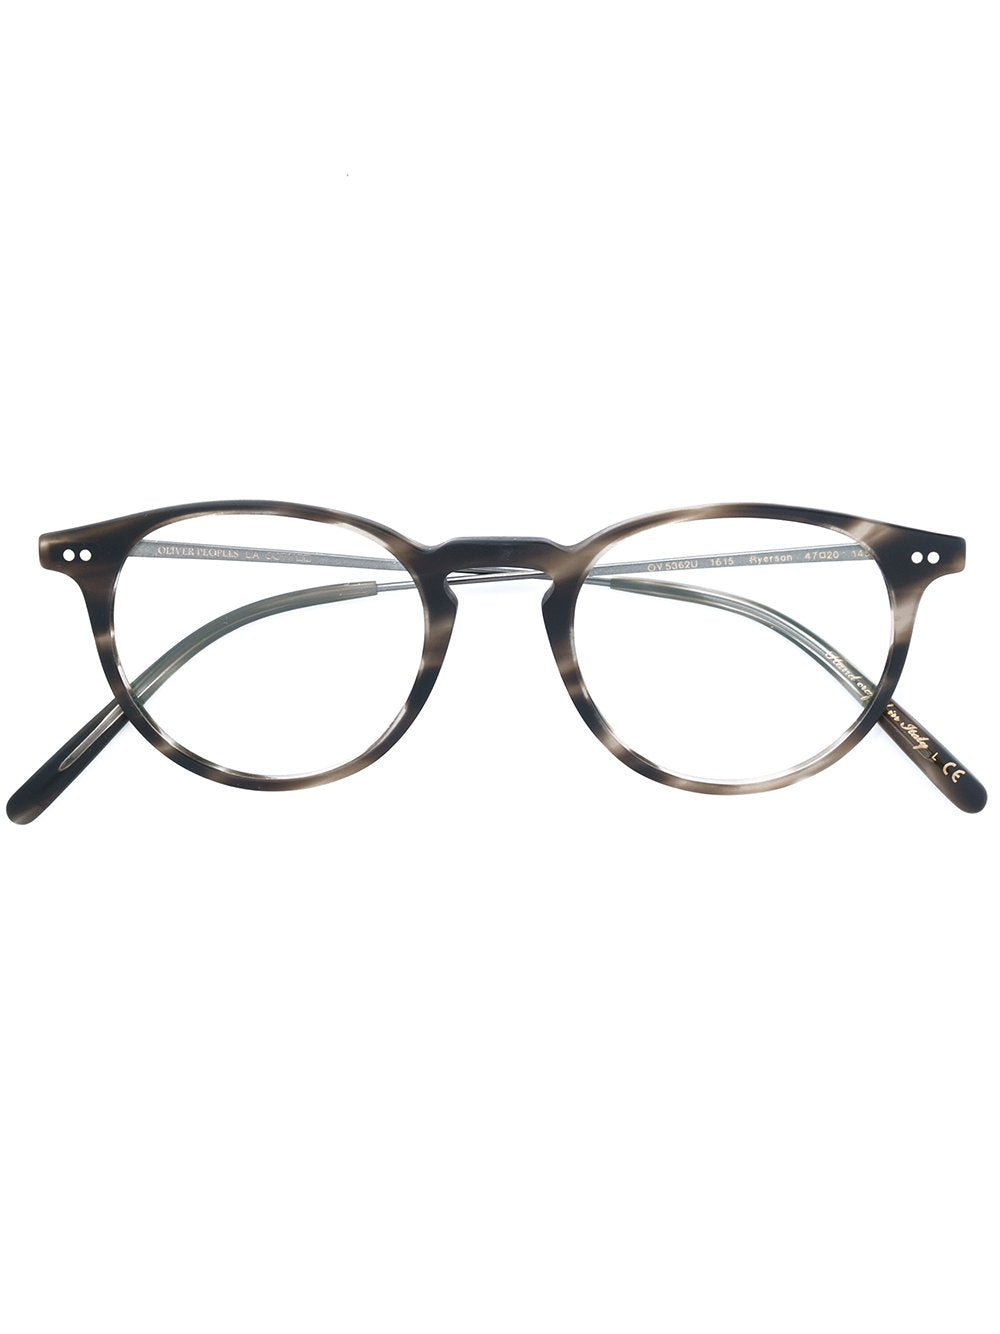 OLIVER PEOPLES UNISEX Acetate / Metal Glasses & Frames 